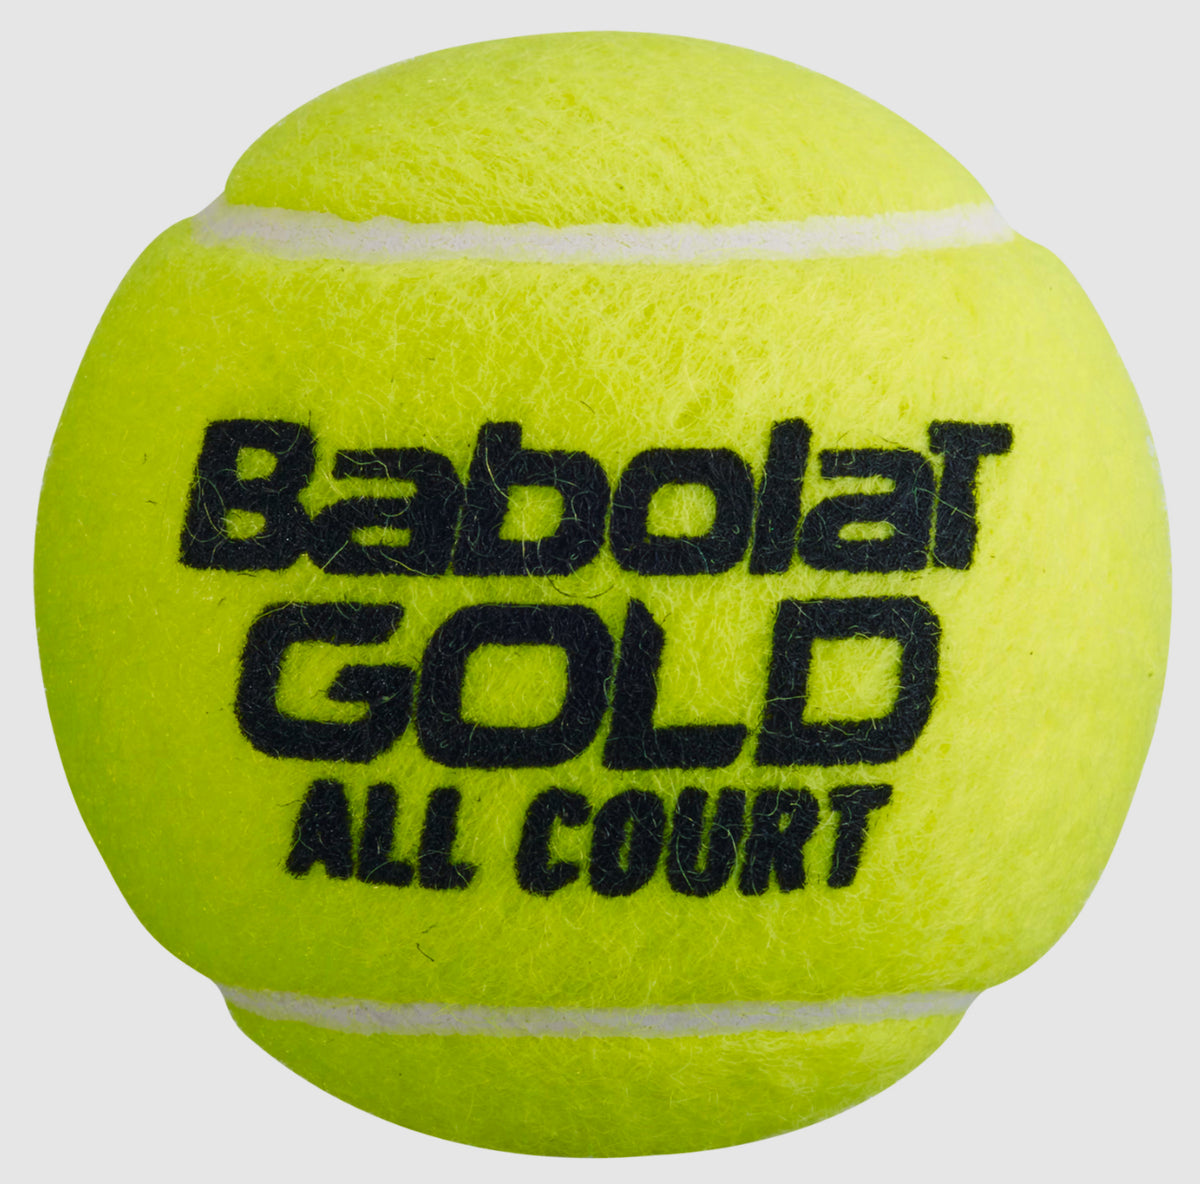 Babolat Gold All Court x4 Tennis Ball 502085-113